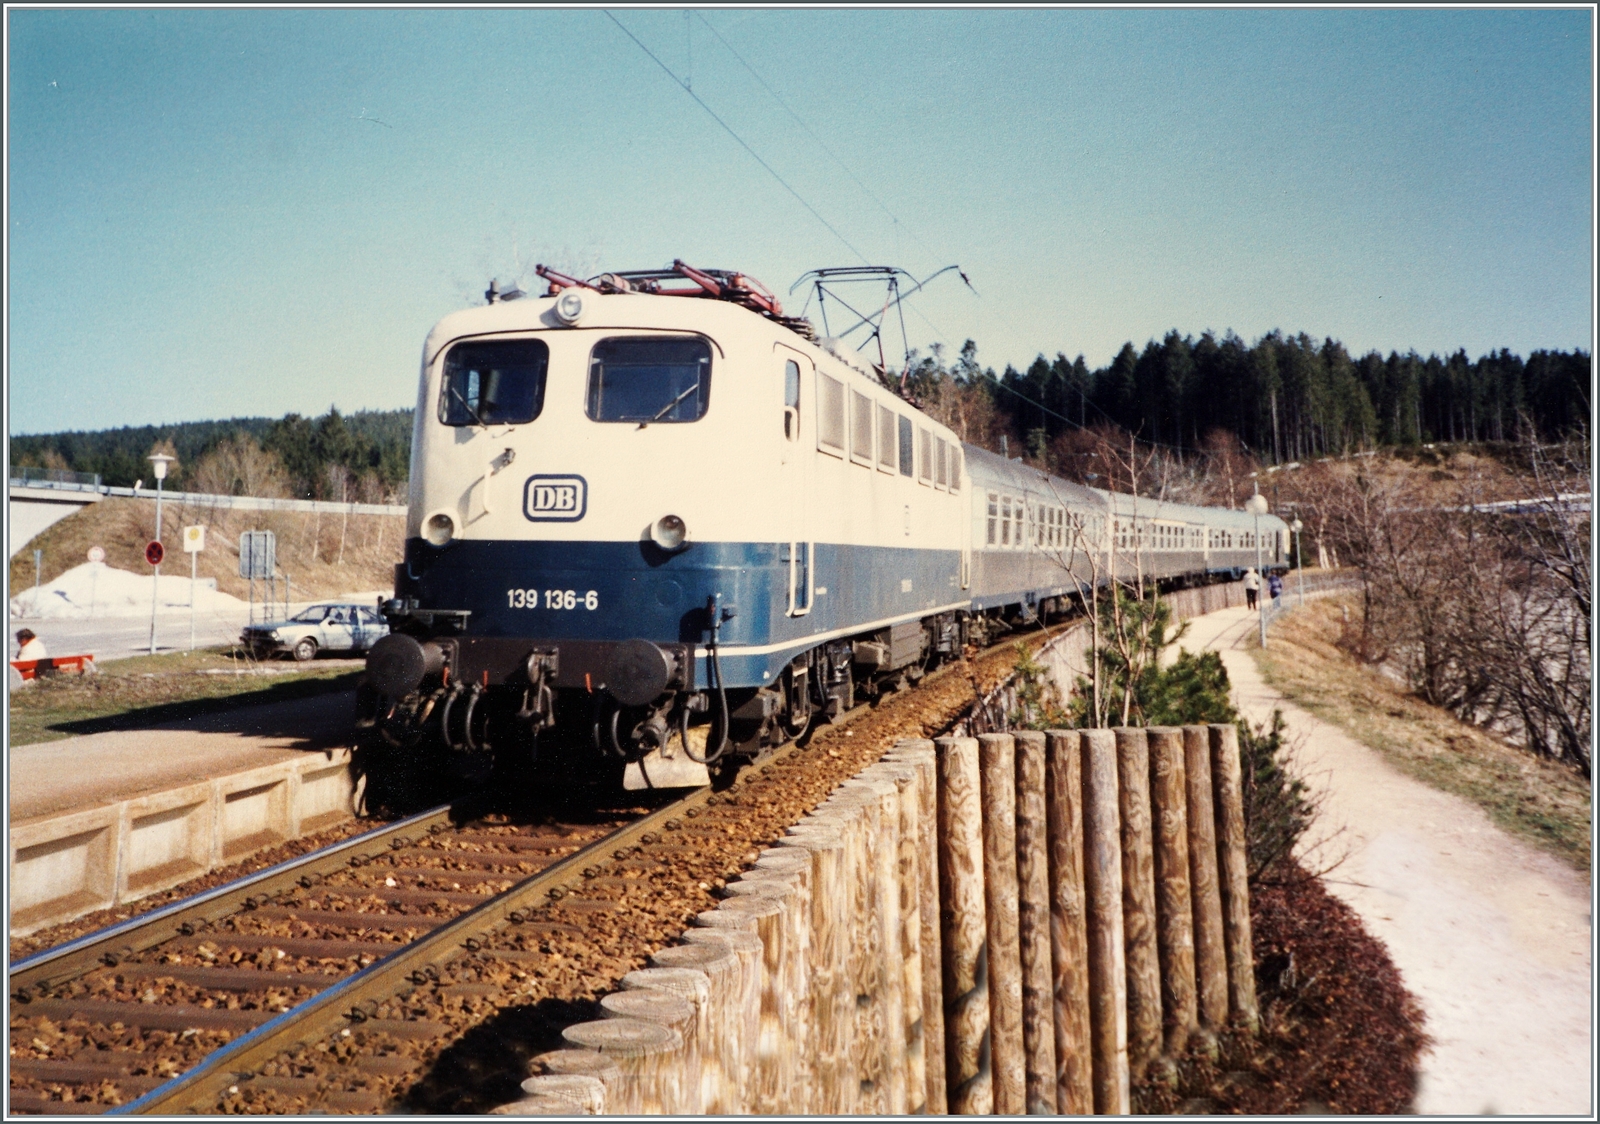 Die DB 139 136- erreicht mit ihrem Nahverkehrszug auf dem Weg von Seebrugg nach Freiburg i.B. den Halt Schluchsee.

Analogbild vom April 1988